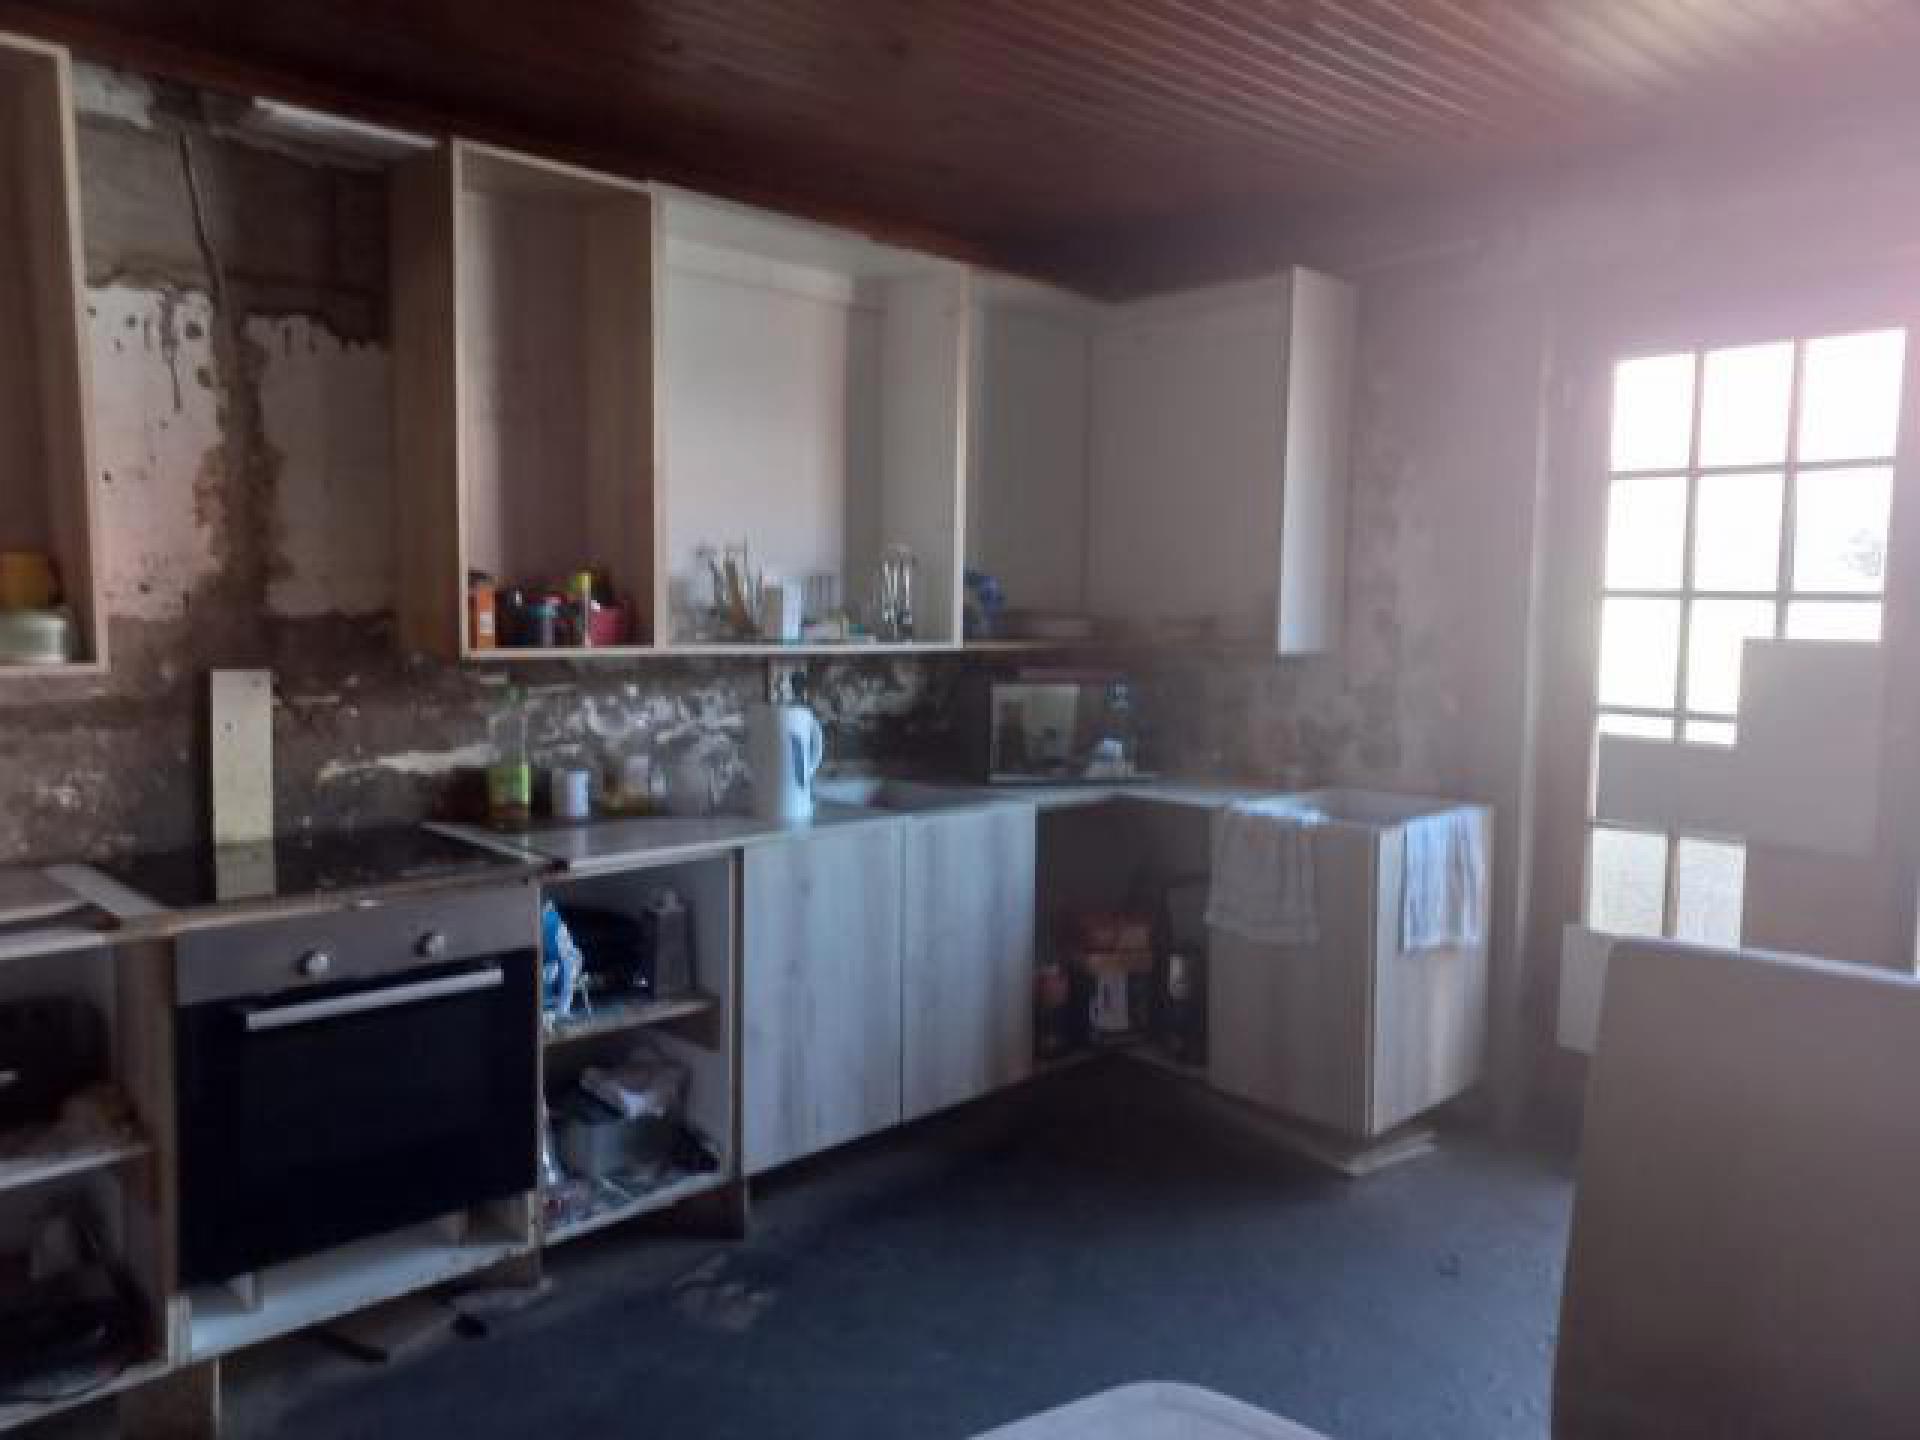 Kitchen of property in Uitenhage